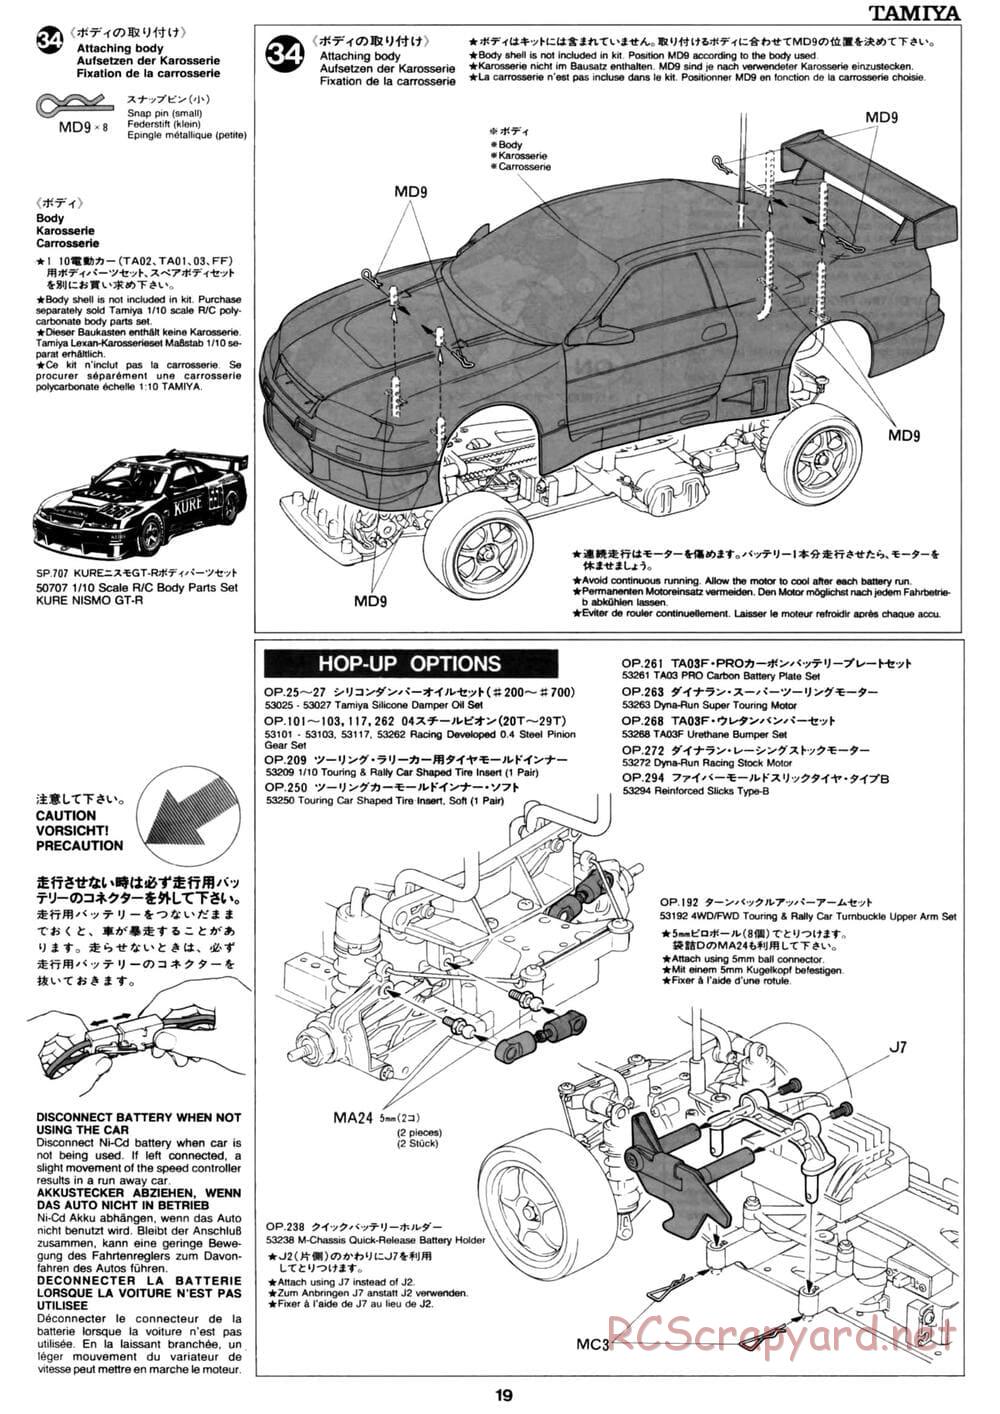 Tamiya - David Jun TA03F Pro Chassis - Manual - Page 19